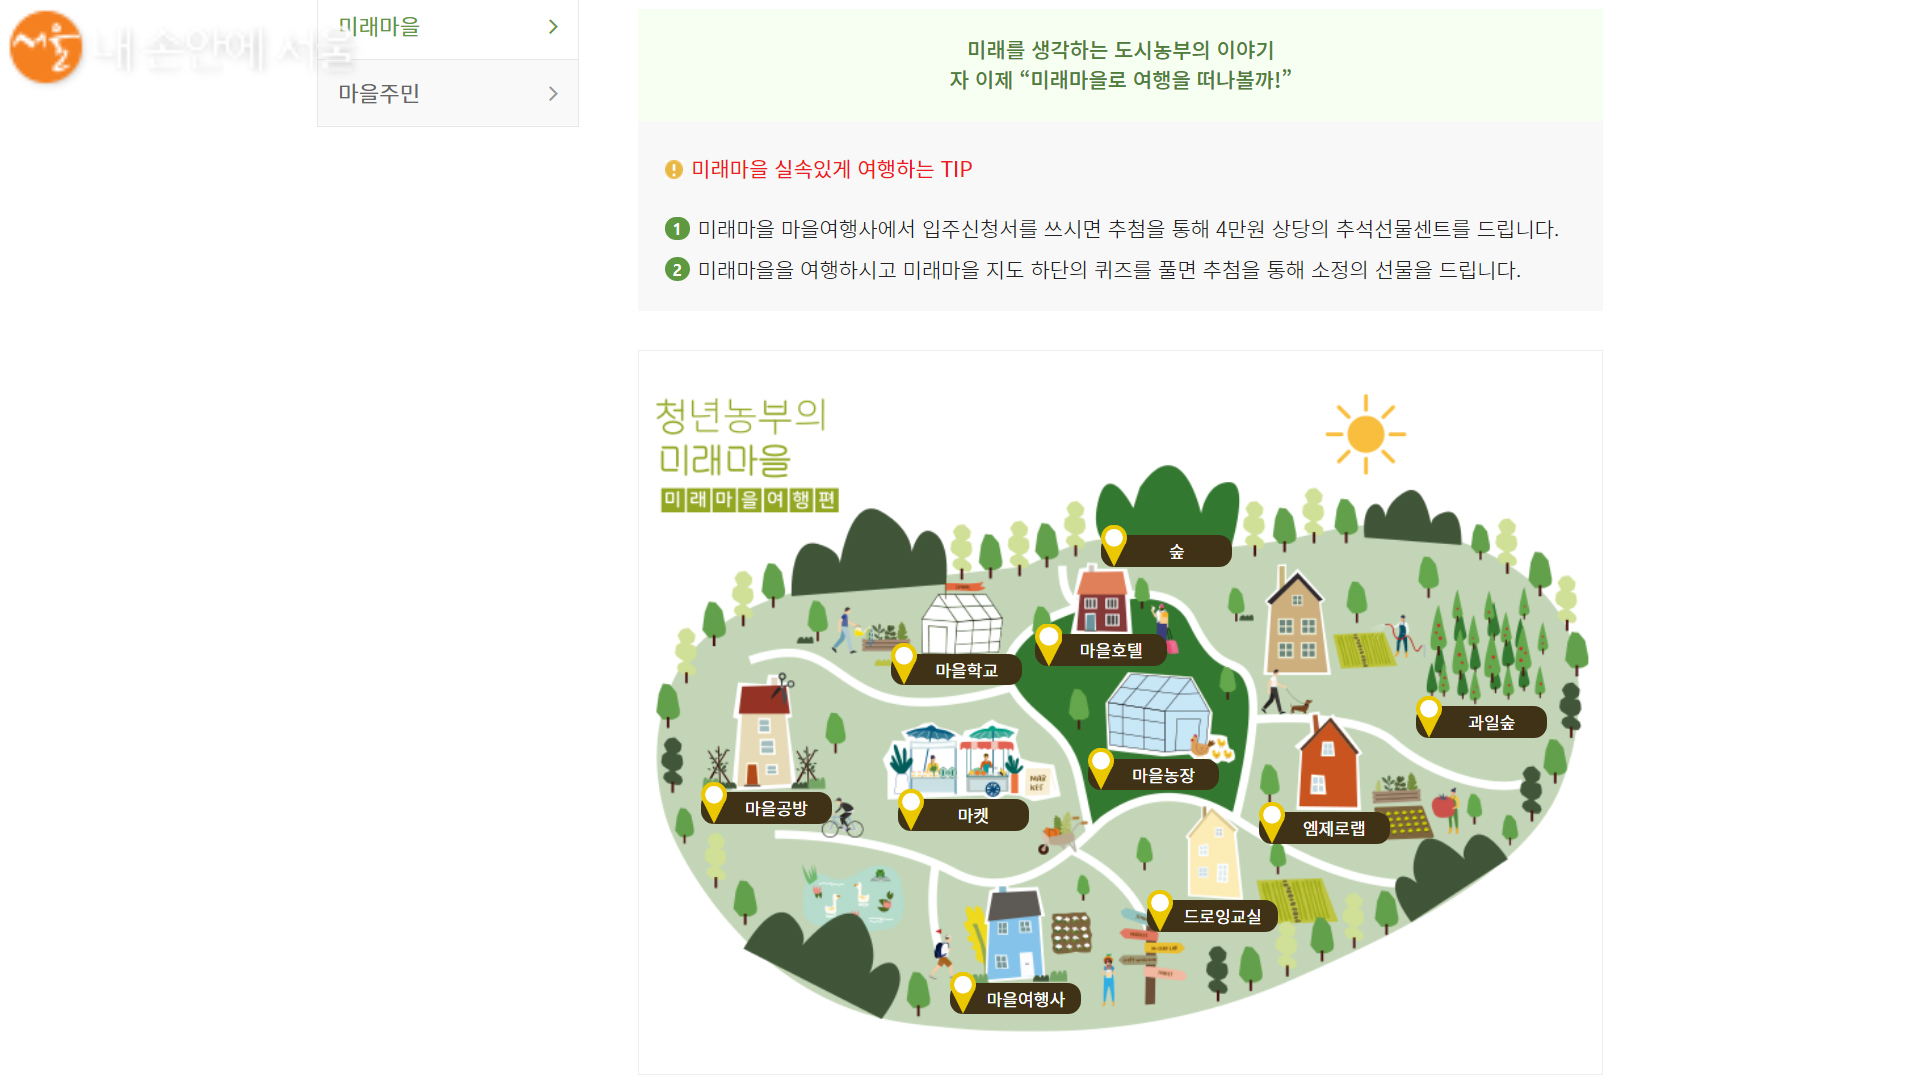 제 9회 서울도시농업박람회 미래마을 투어 